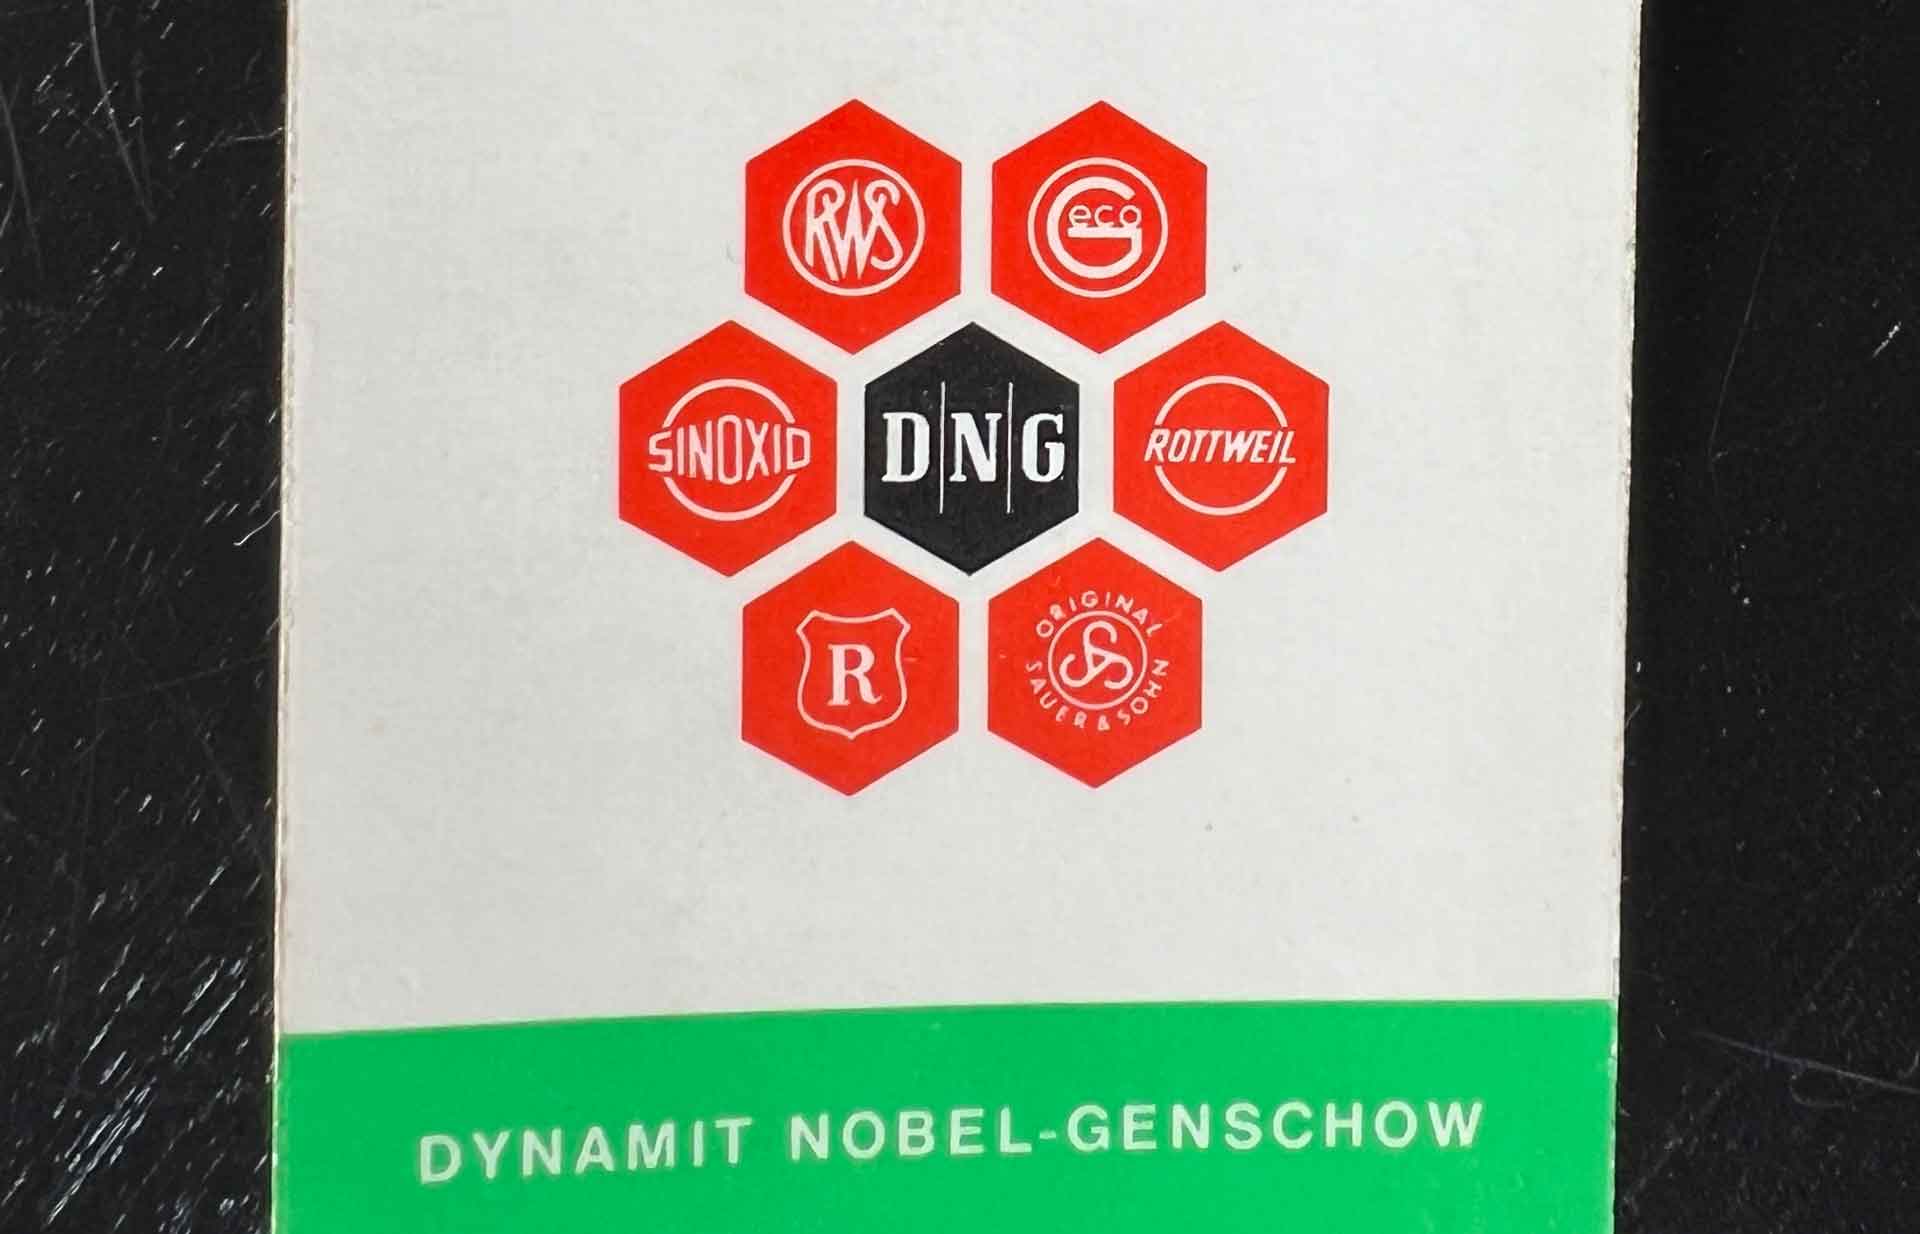 Zum Firmenverbund Dynamit Nobel-Genschow gehörte auch Geco.